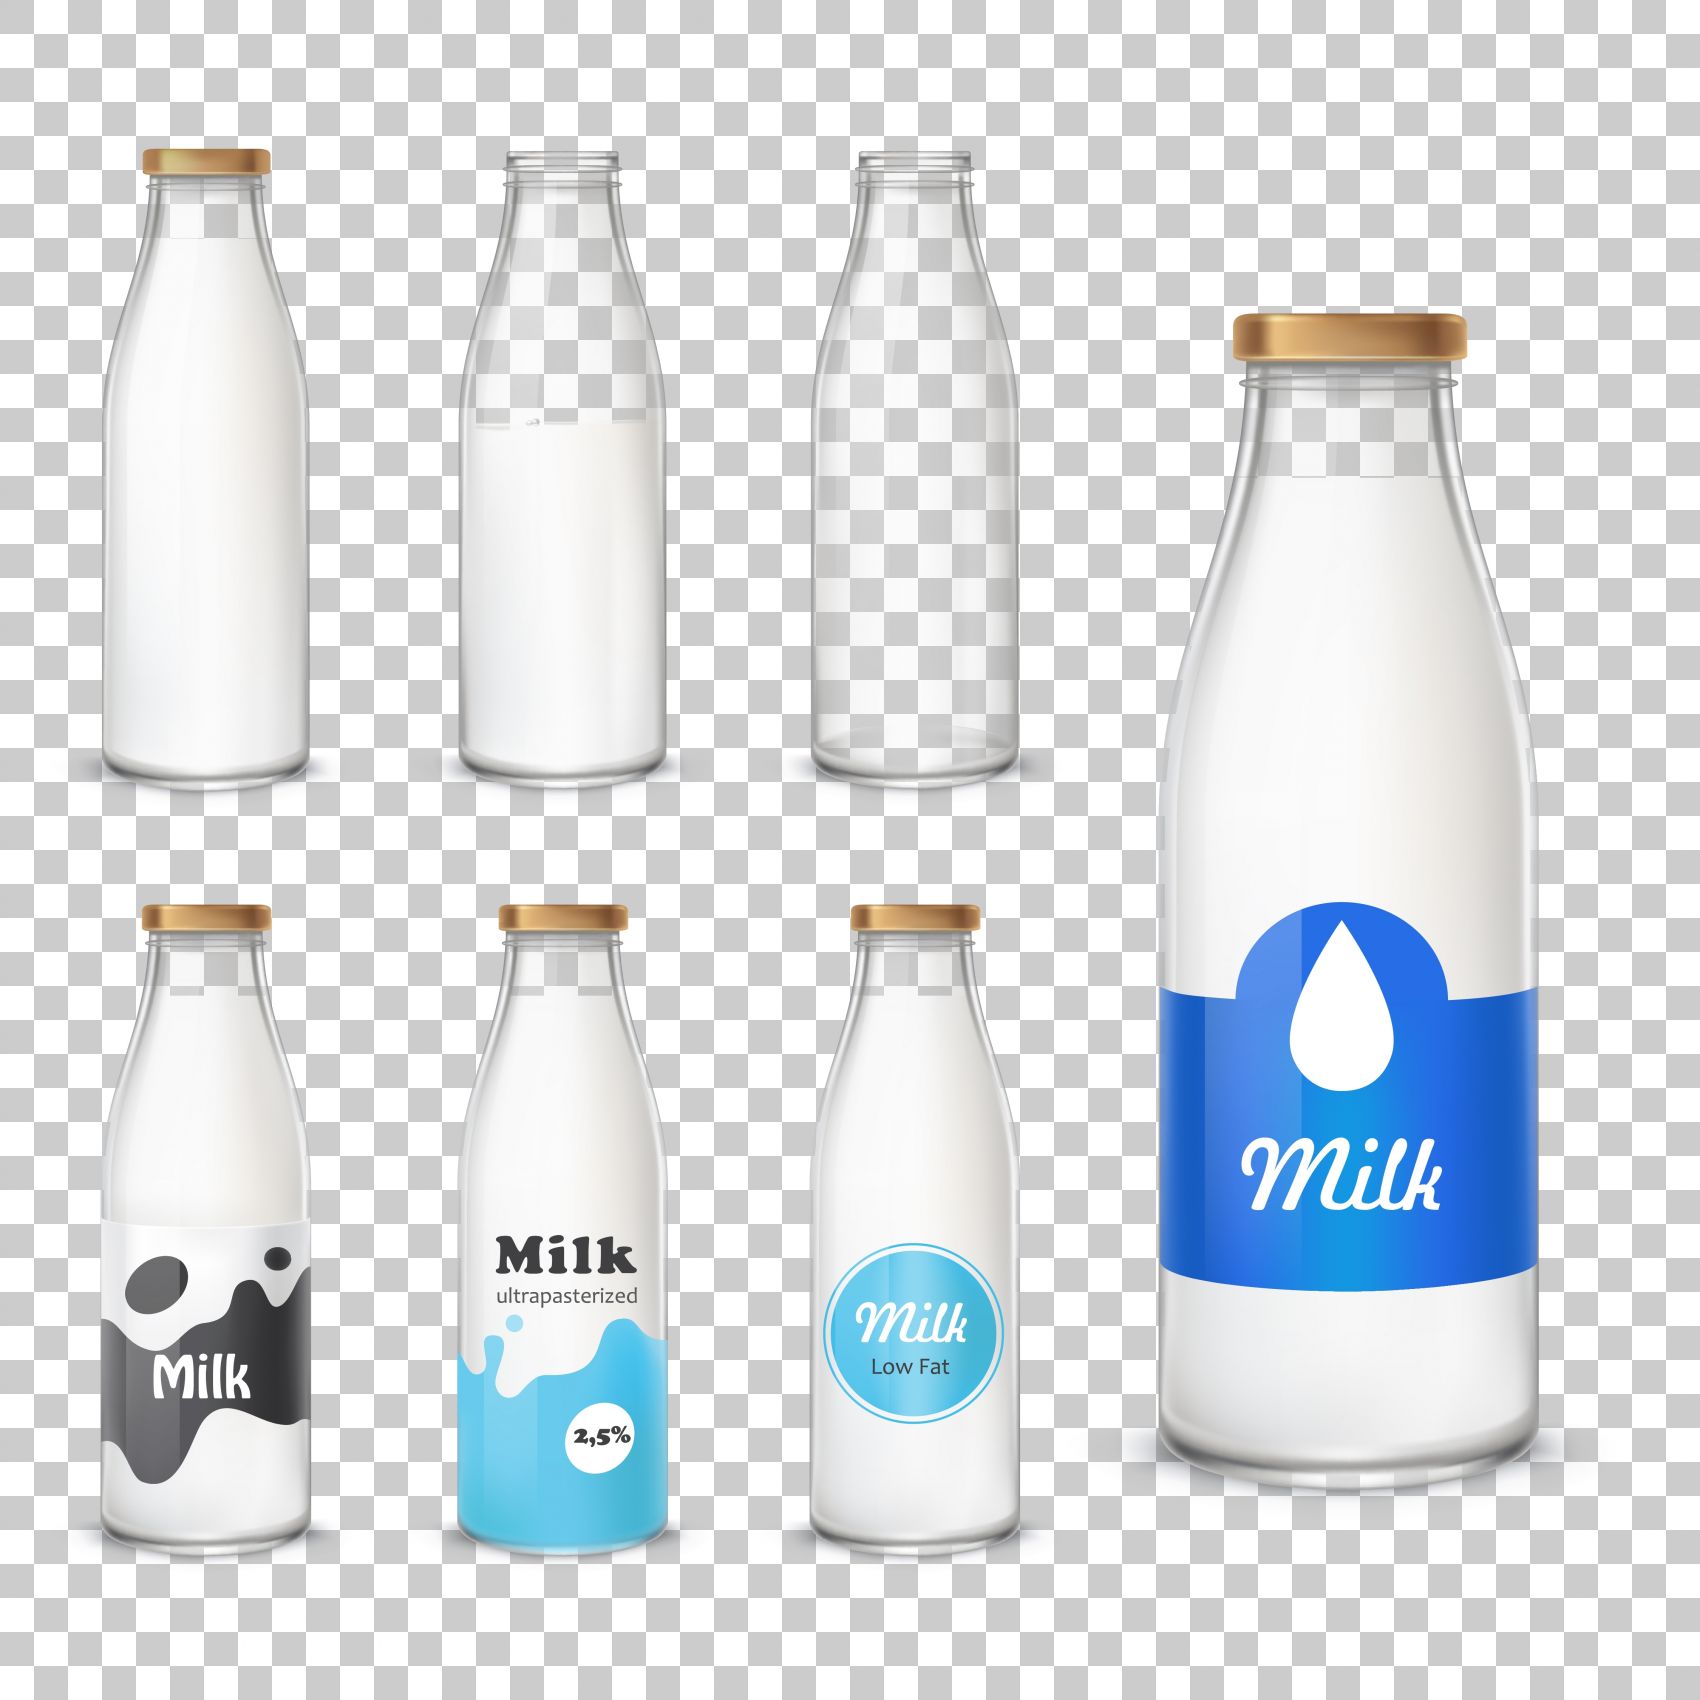 牛奶PSD圖案素材免費下載 - 尺寸2000 × 2000px - 圖形ID401317827 - Lovepik